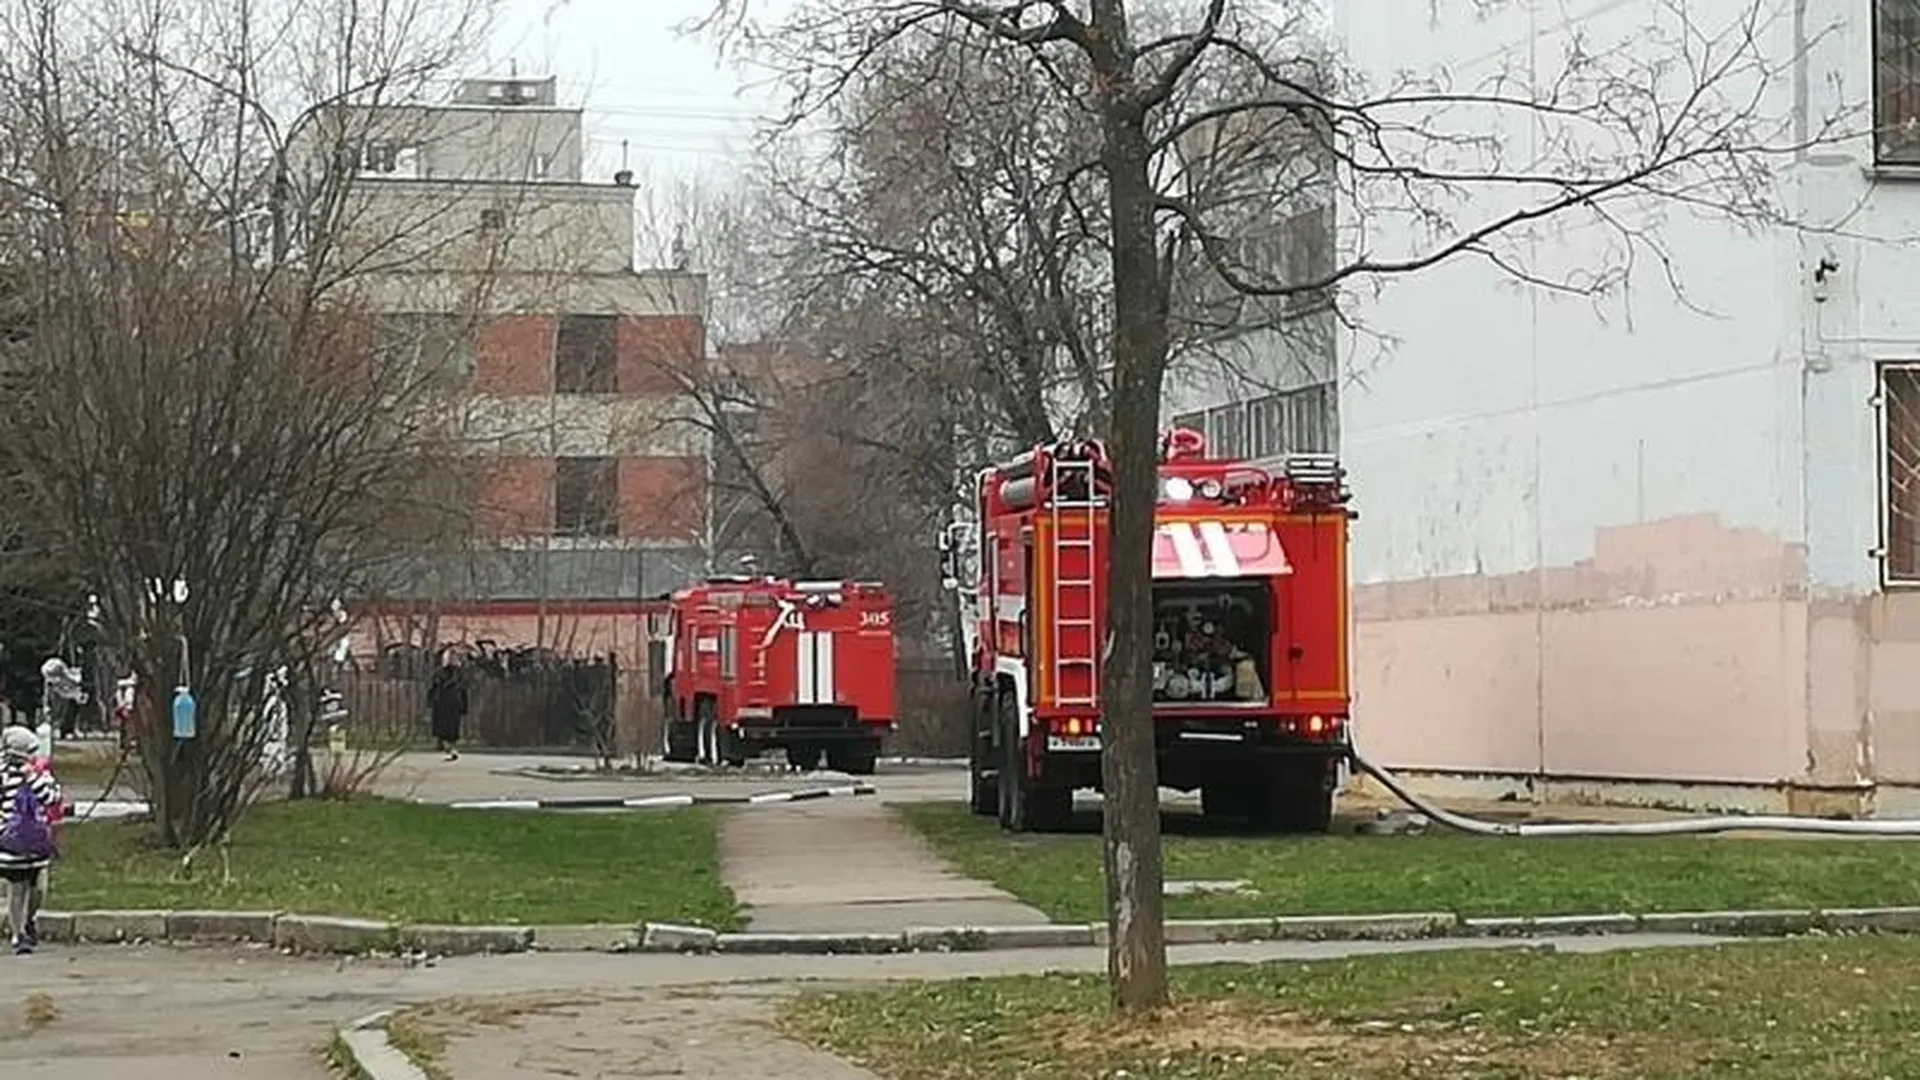 Во Фрязино горел лицей, очевидцы утверждают: решетки на окнах могли помешать эвакуации  